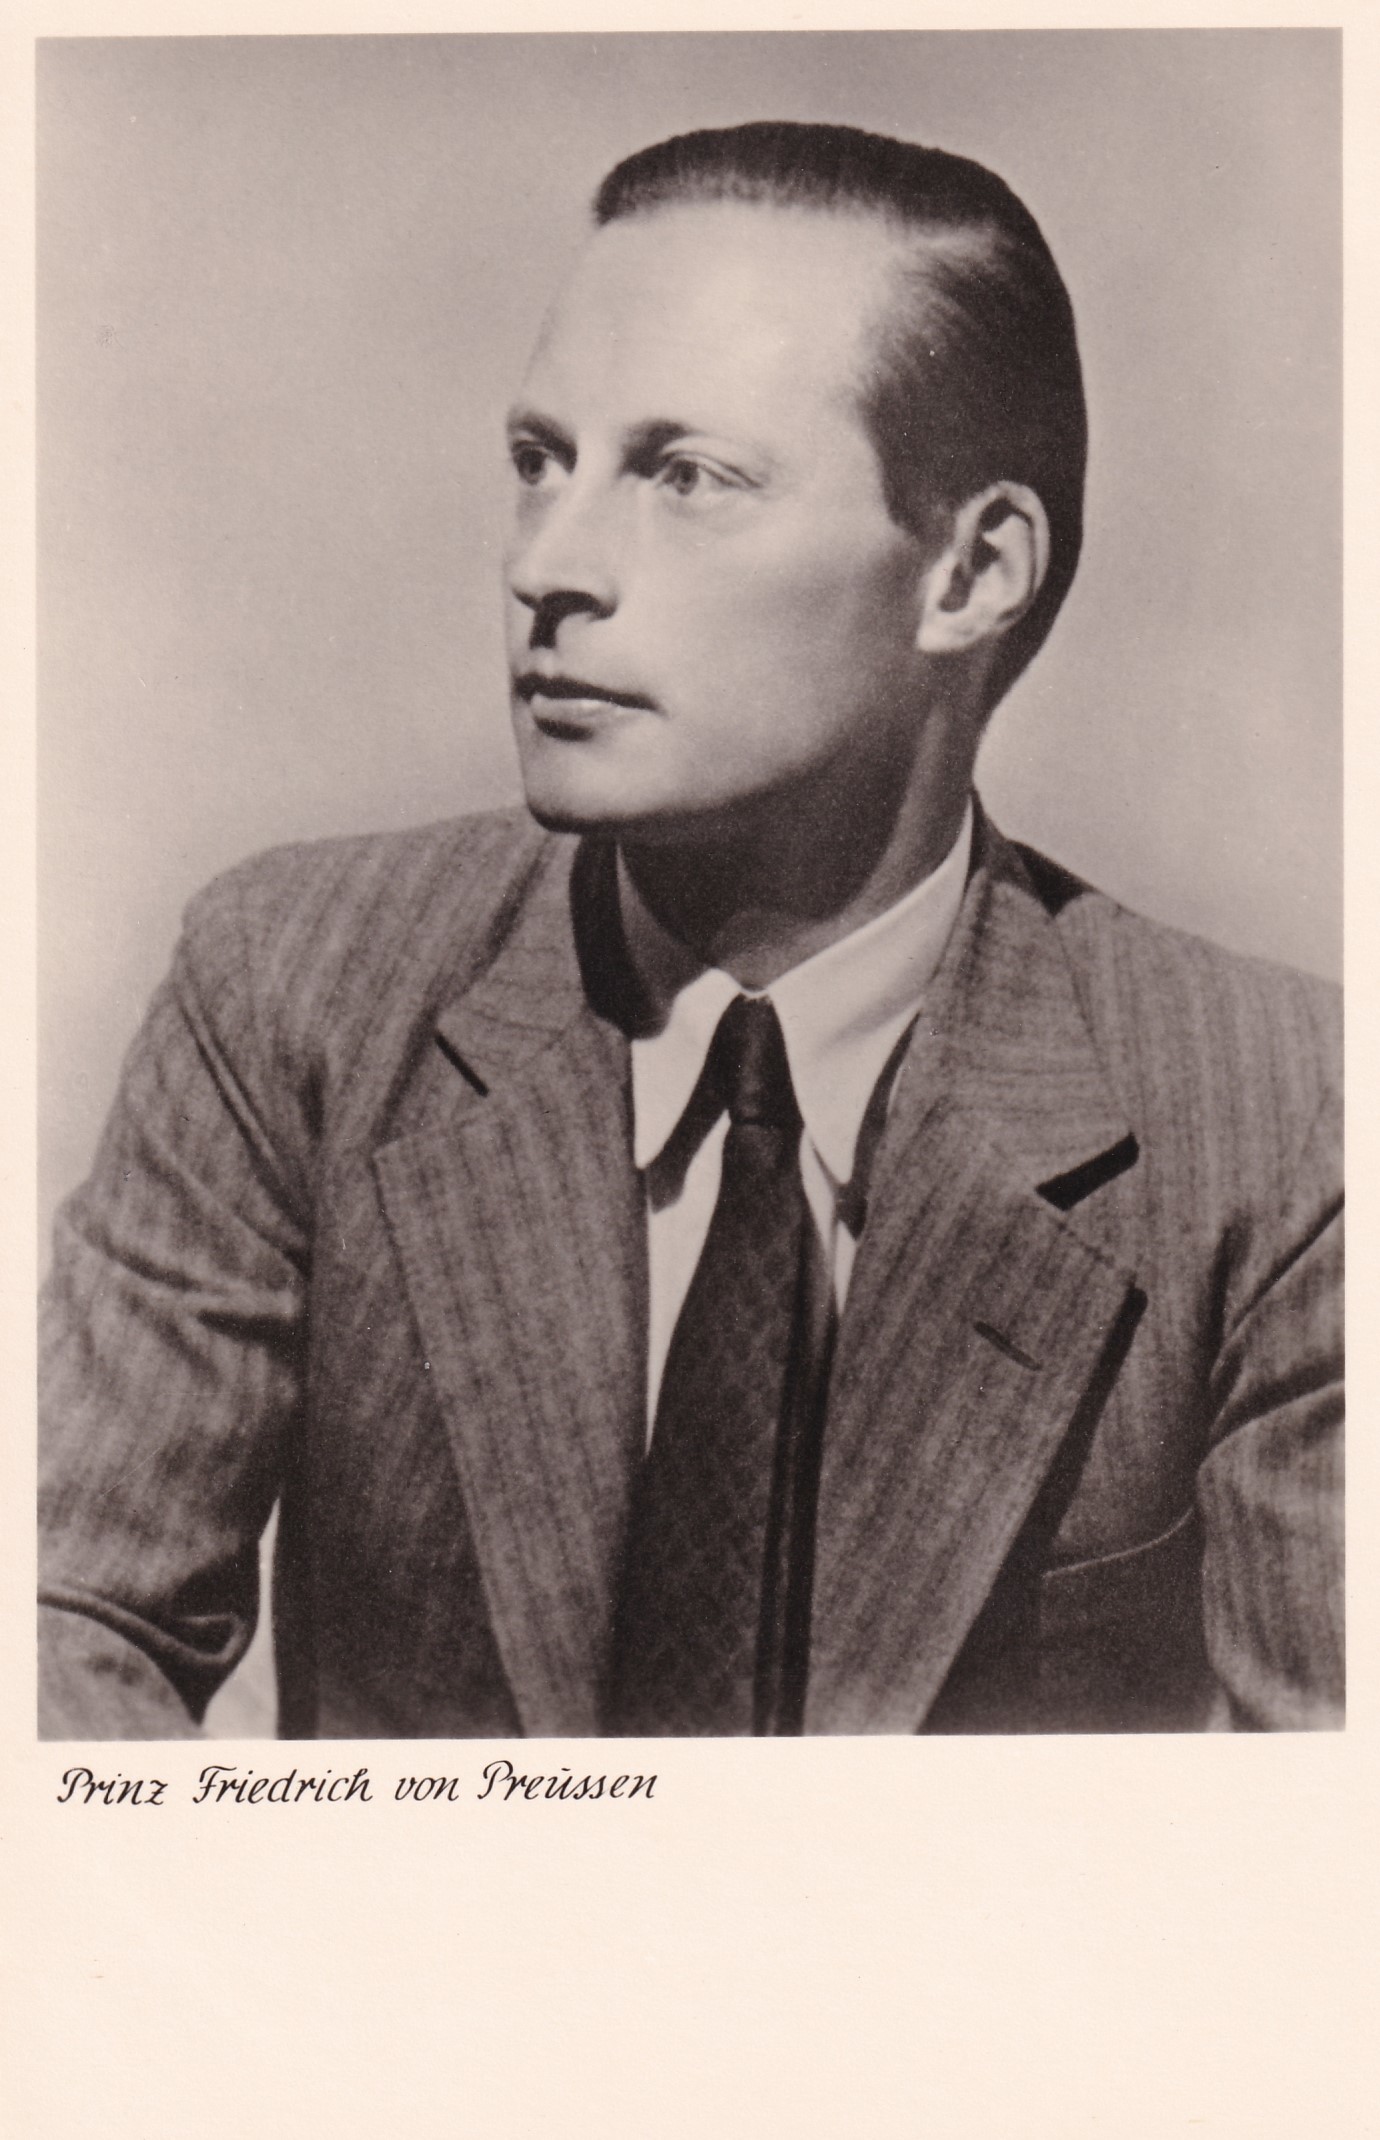 Bildpostkarte mit Foto des Prinzen Friedrich von Preußen (1911-1966), um 1950 (Schloß Wernigerode GmbH RR-F)